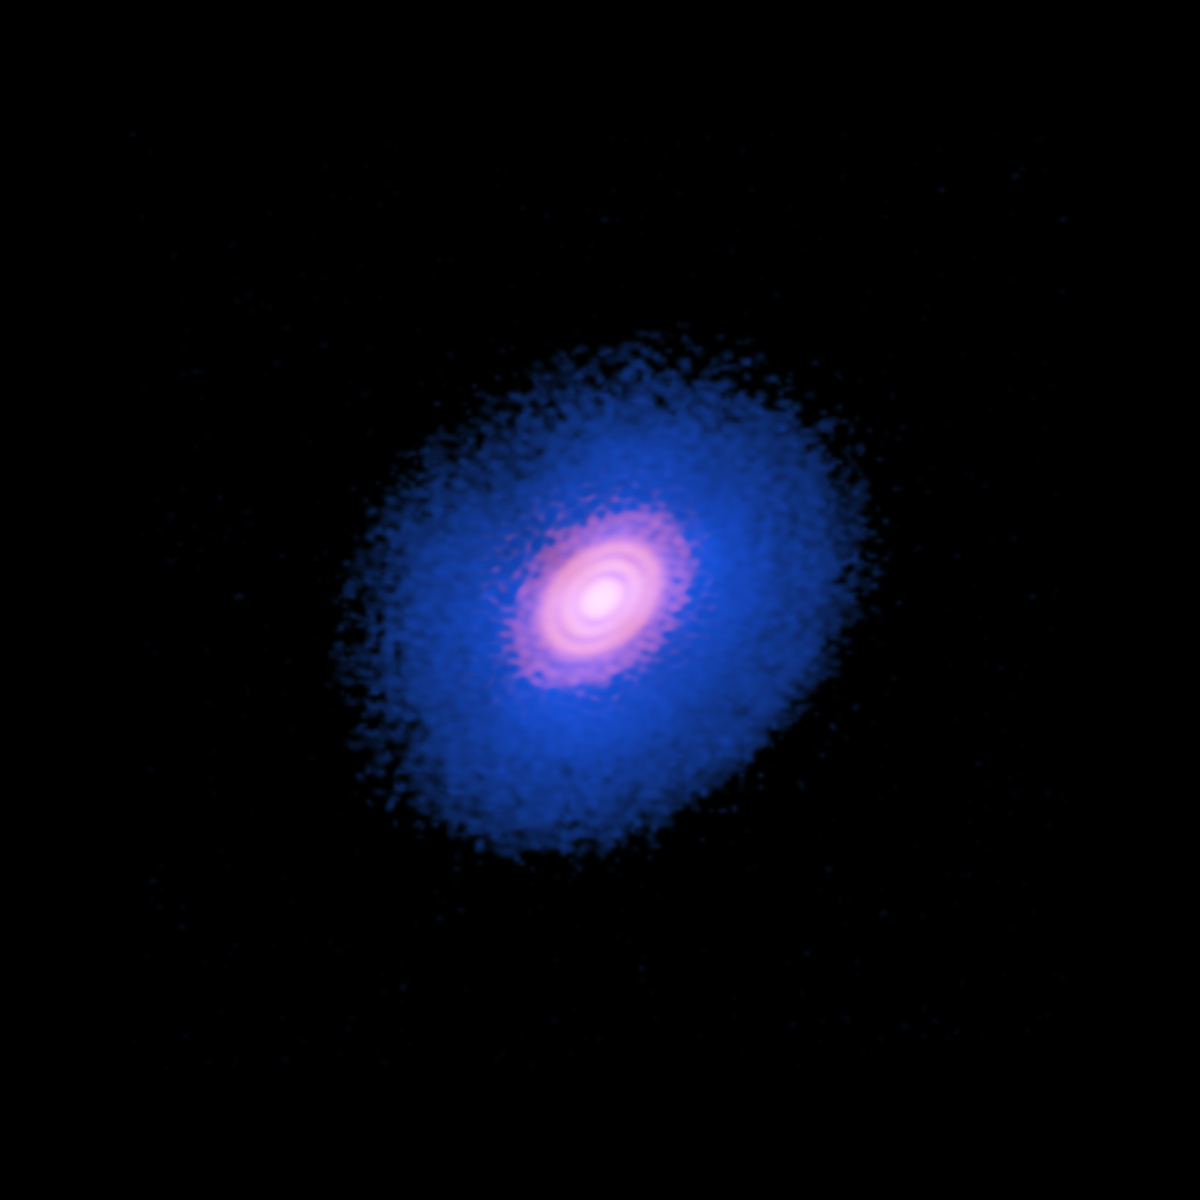 ニュース - ガスと塵の分布が示す惑星誕生の証拠 - アルマ望遠鏡